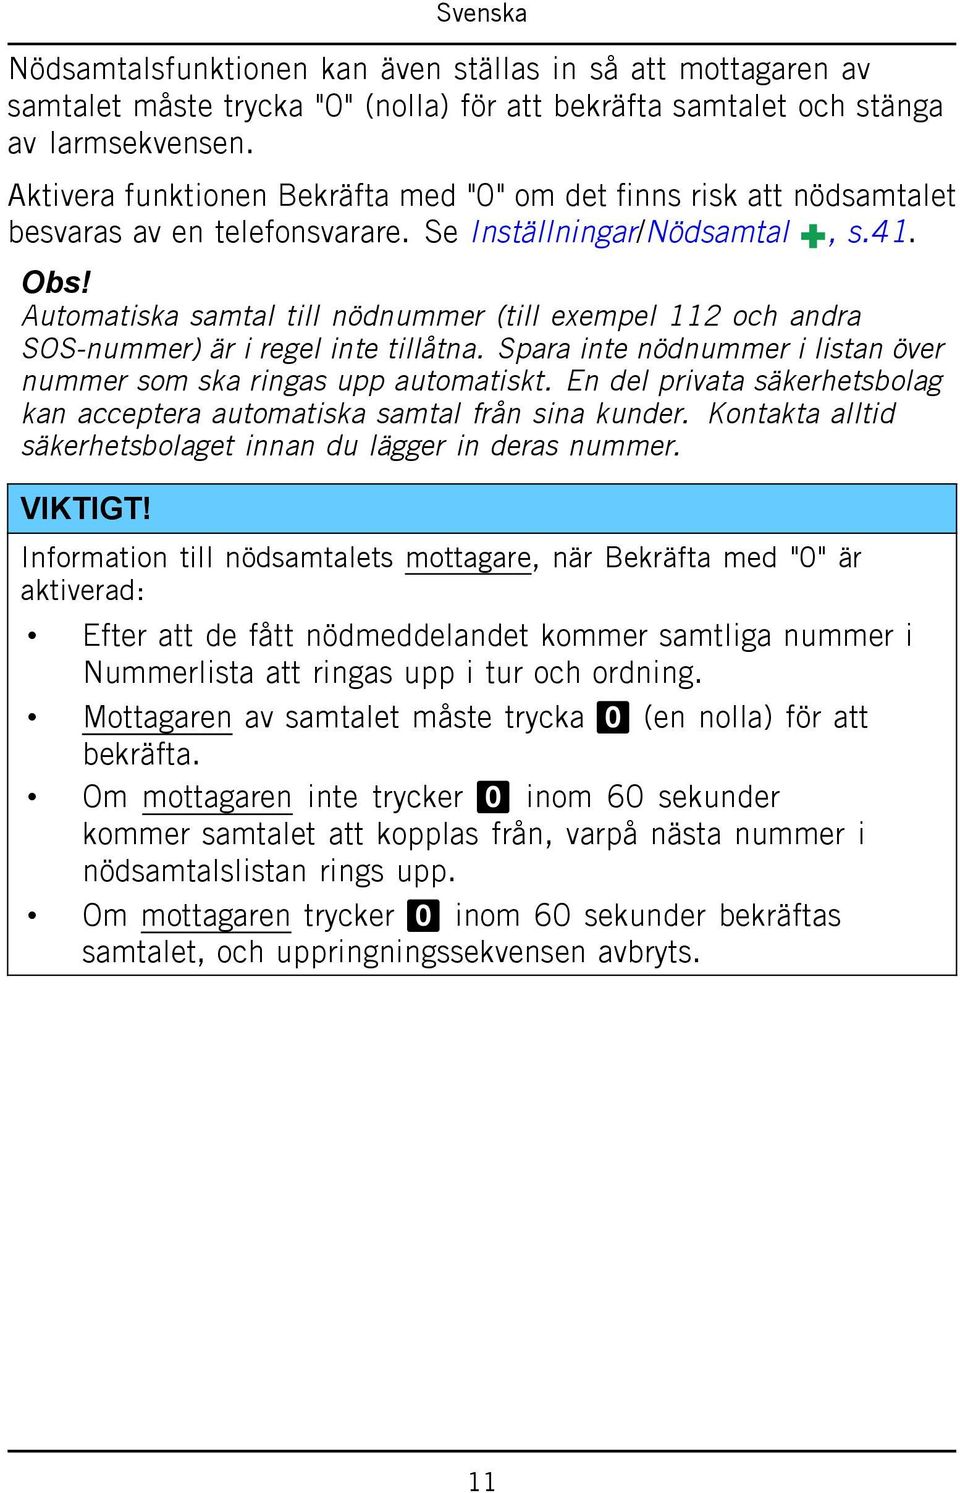 Automatiska samtal till nödnummer (till exempel 112 och andra SOS-nummer) är i regel inte tillåtna. Spara inte nödnummer i listan över nummer som ska ringas upp automatiskt.